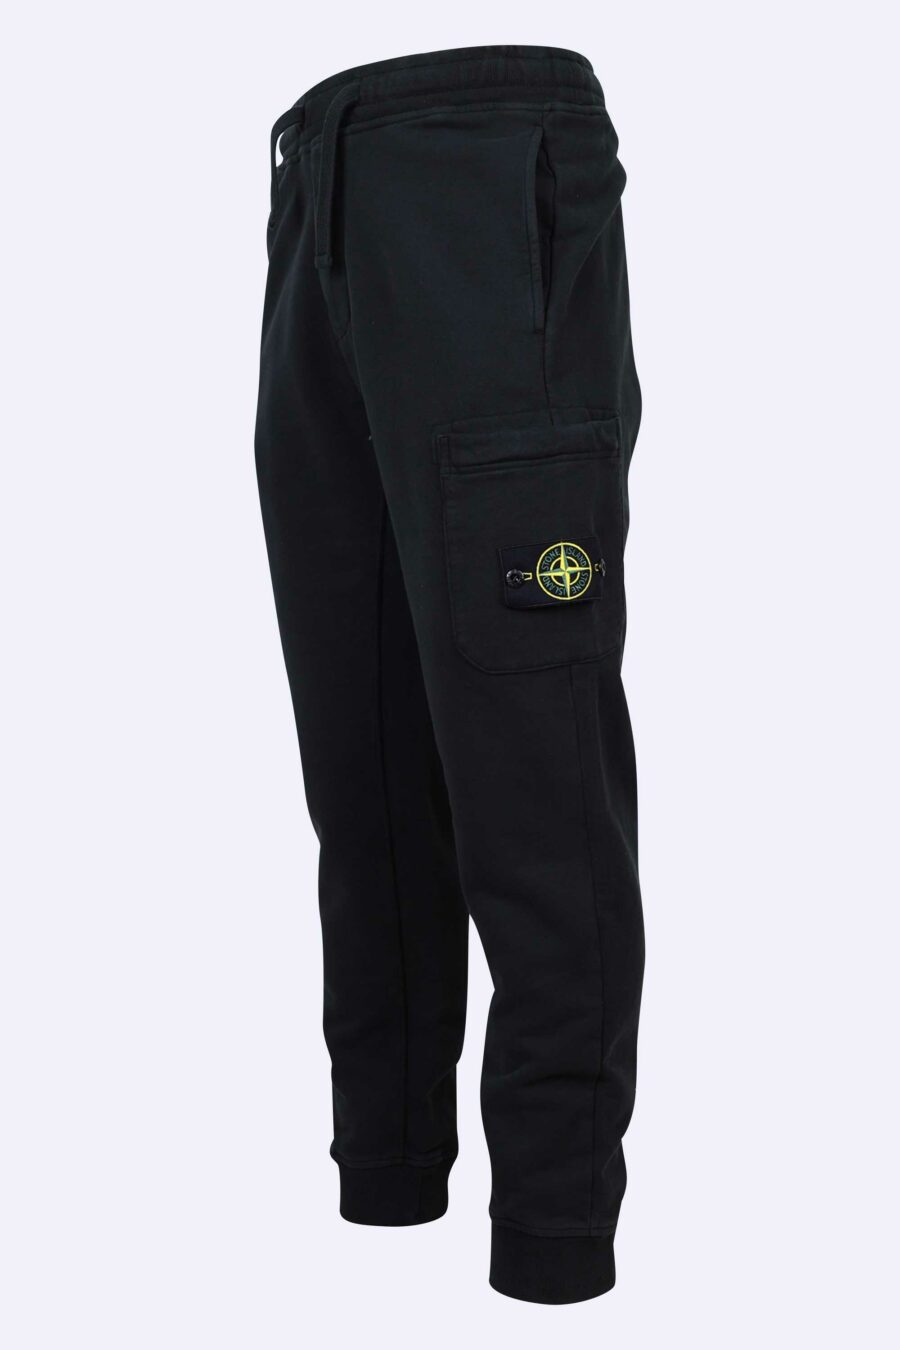 Pantalón de chándal negro con logo lateral parche - 8052572720062 1